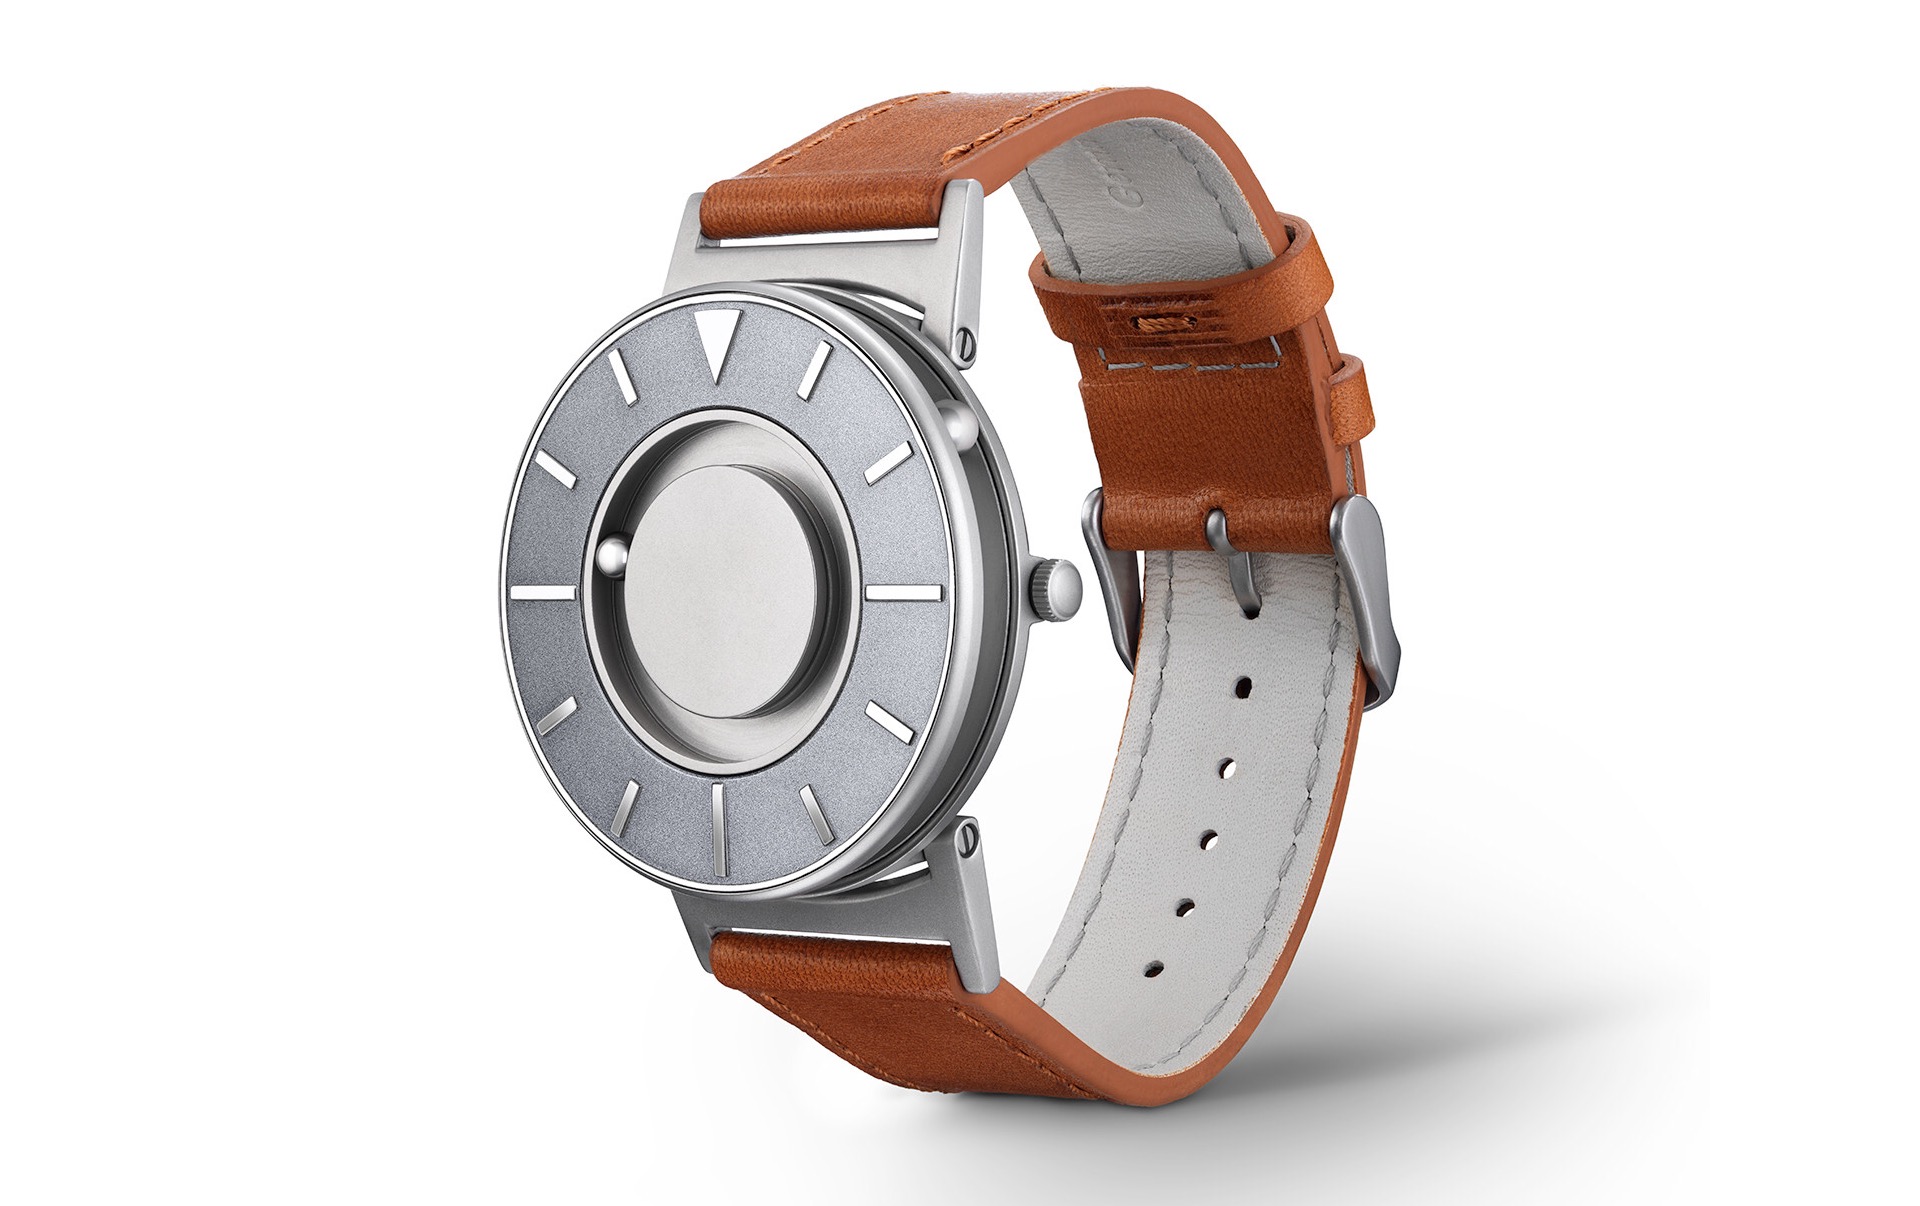 The Eone Bradley watch. ($285–$395, depending on model)